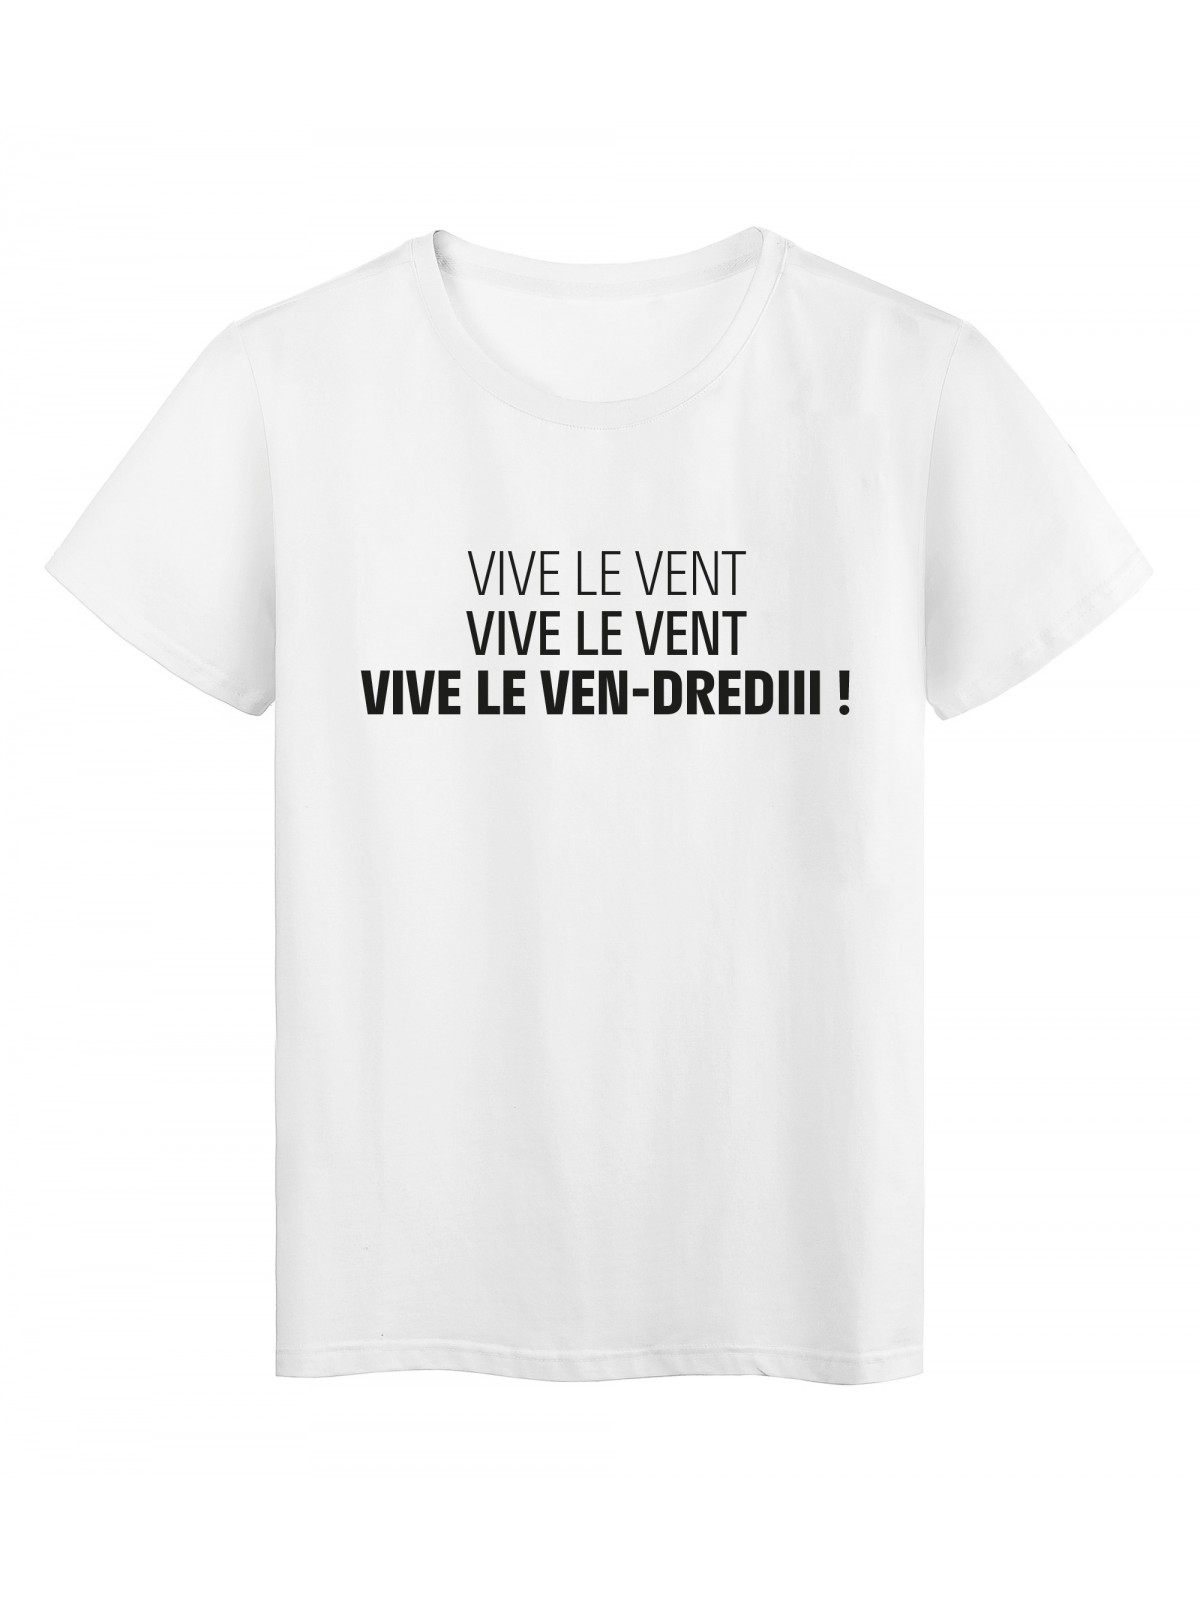 T-Shirt imprimÃ© citation humour Vive le vent-dredi